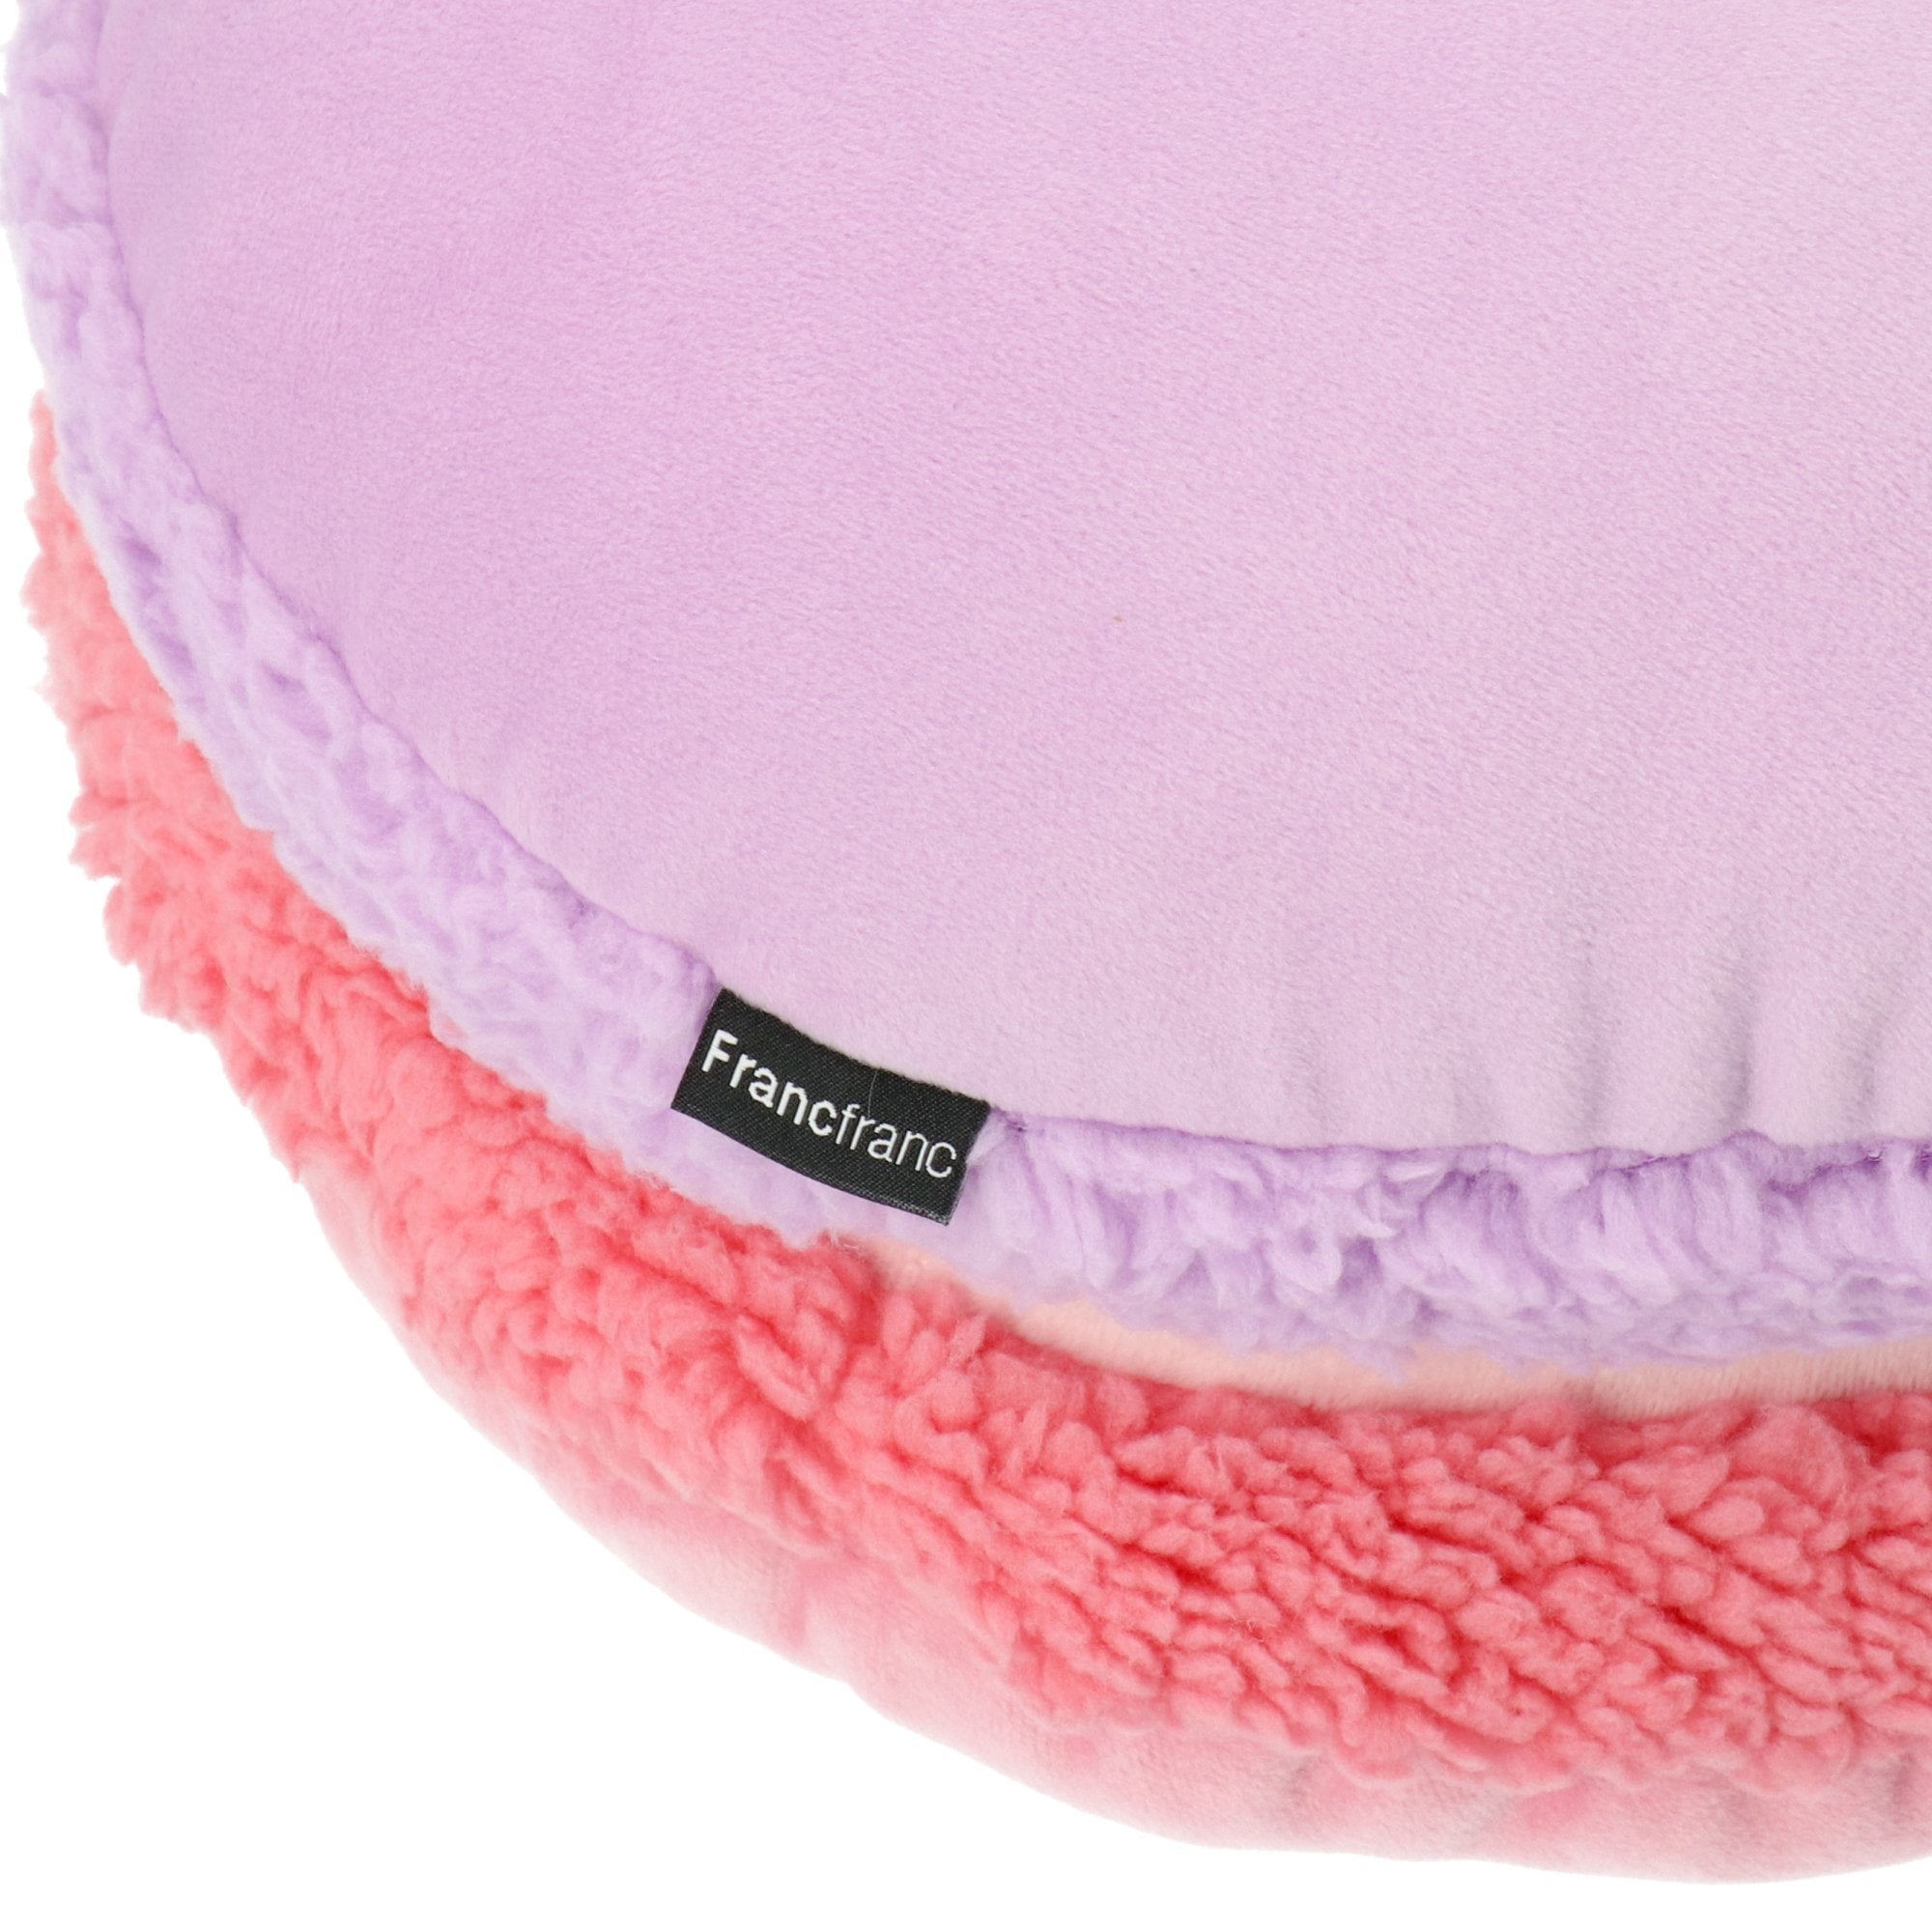 馬卡龍抱枕 300 X 300 粉色 X 紫色